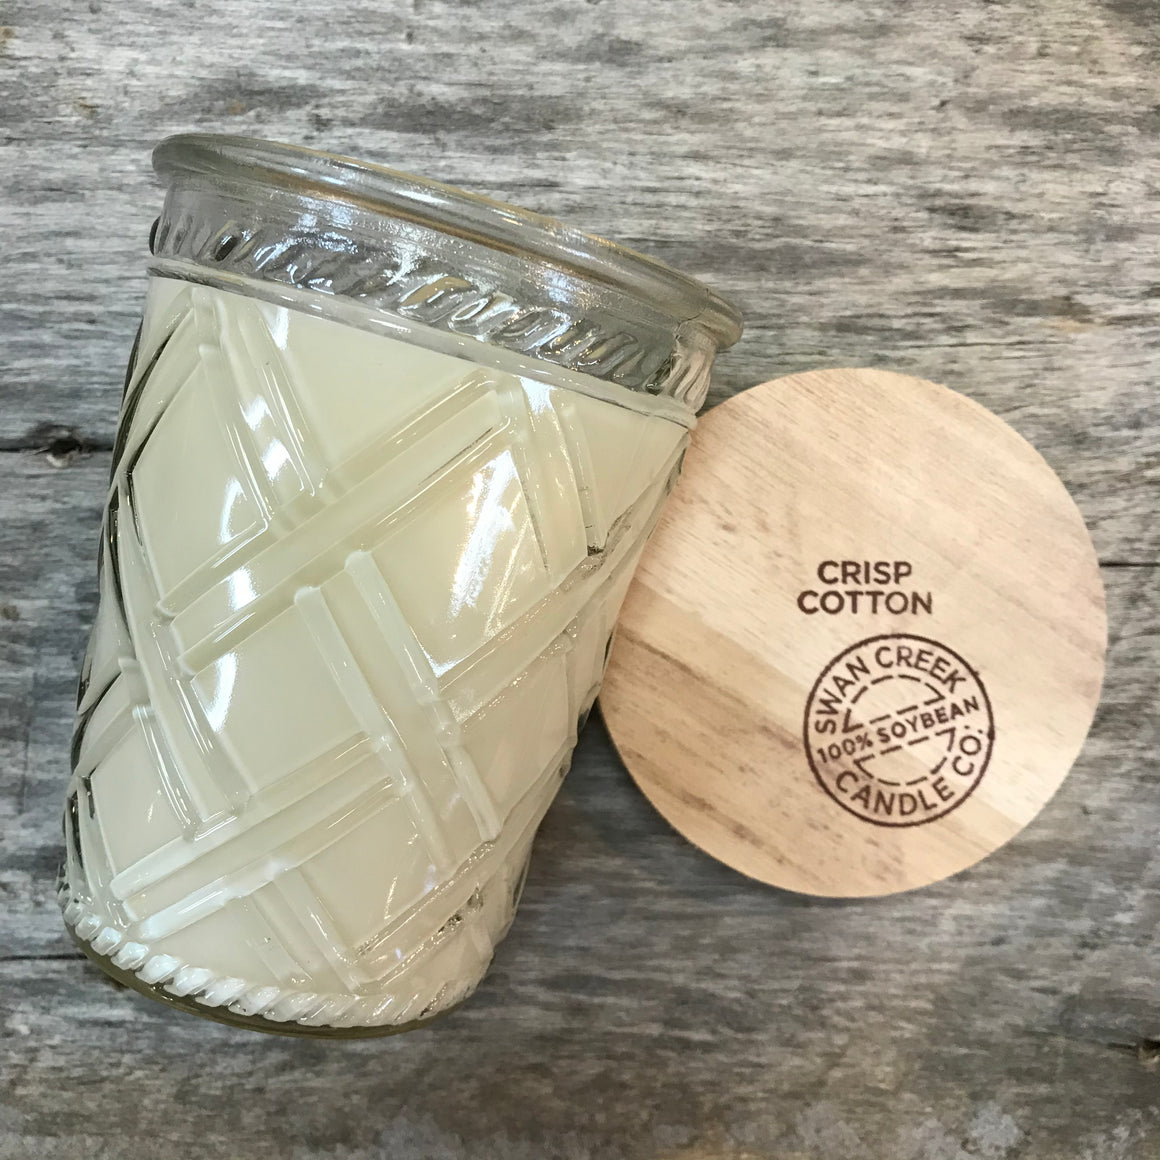 Crisp Cotton - Vintage Glass Jar Candle